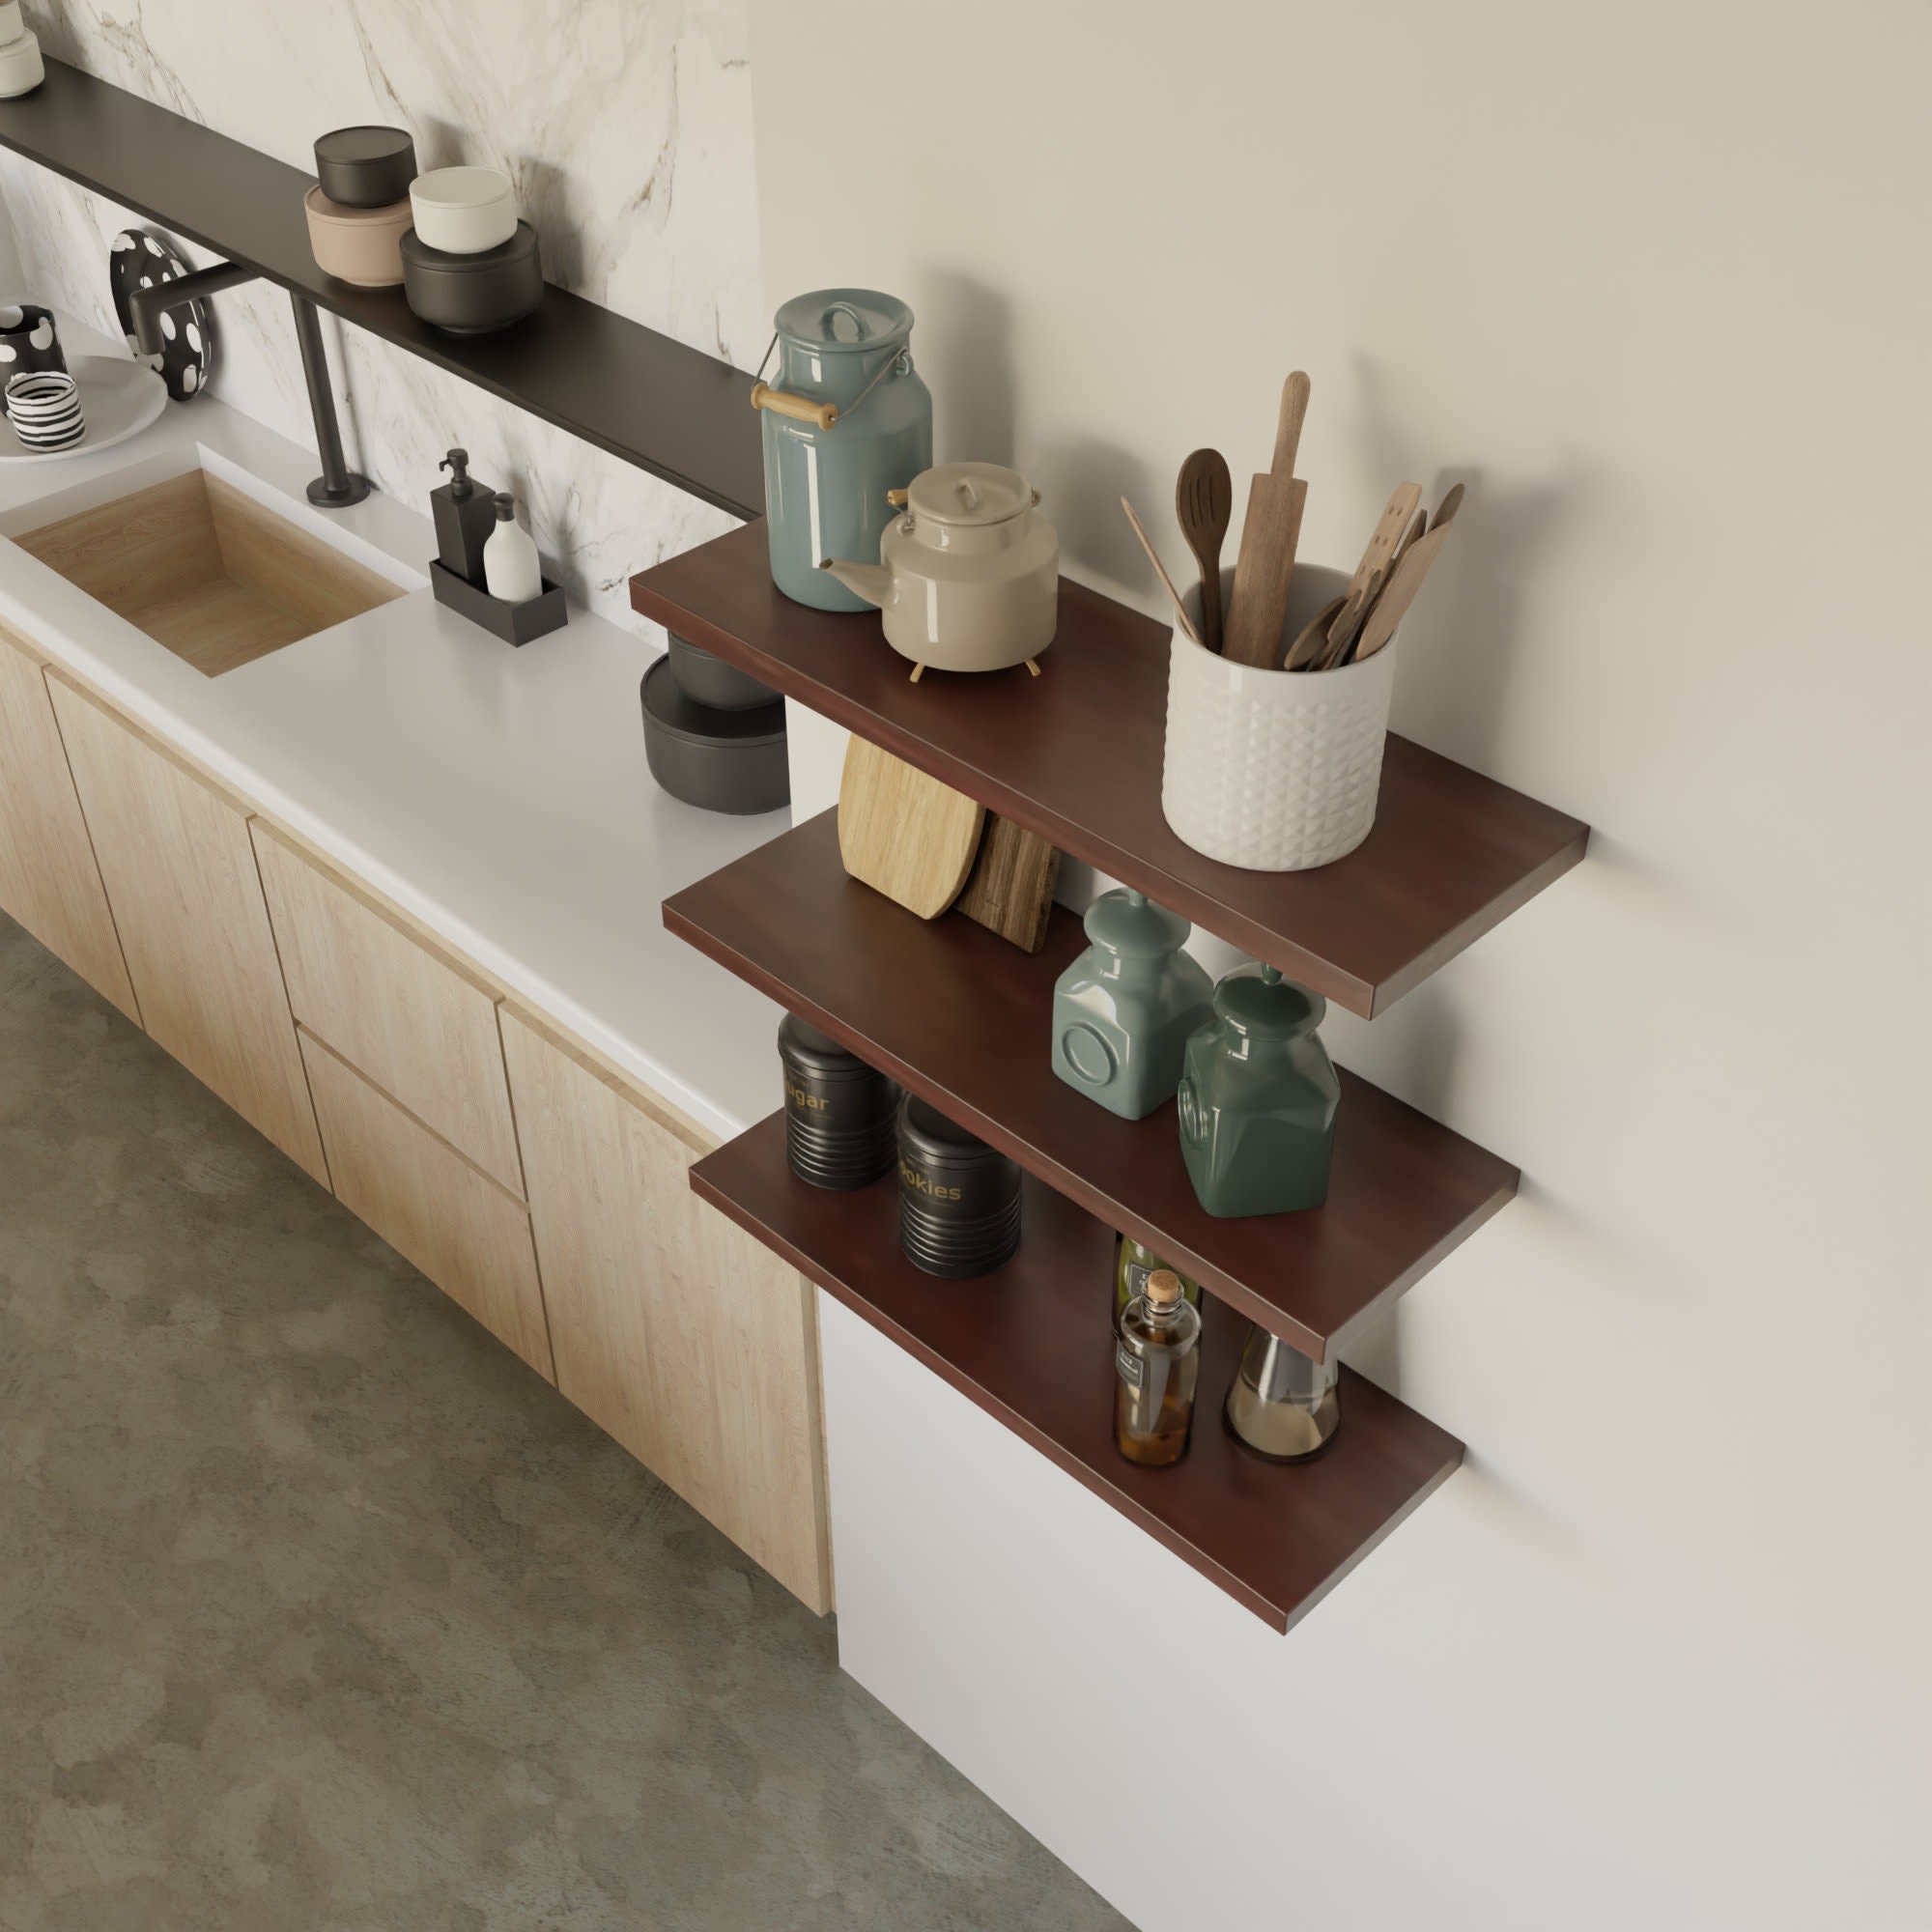 Walnut Custom Floating Shelves, Kitchen Wall Shelf by Picwoodwork